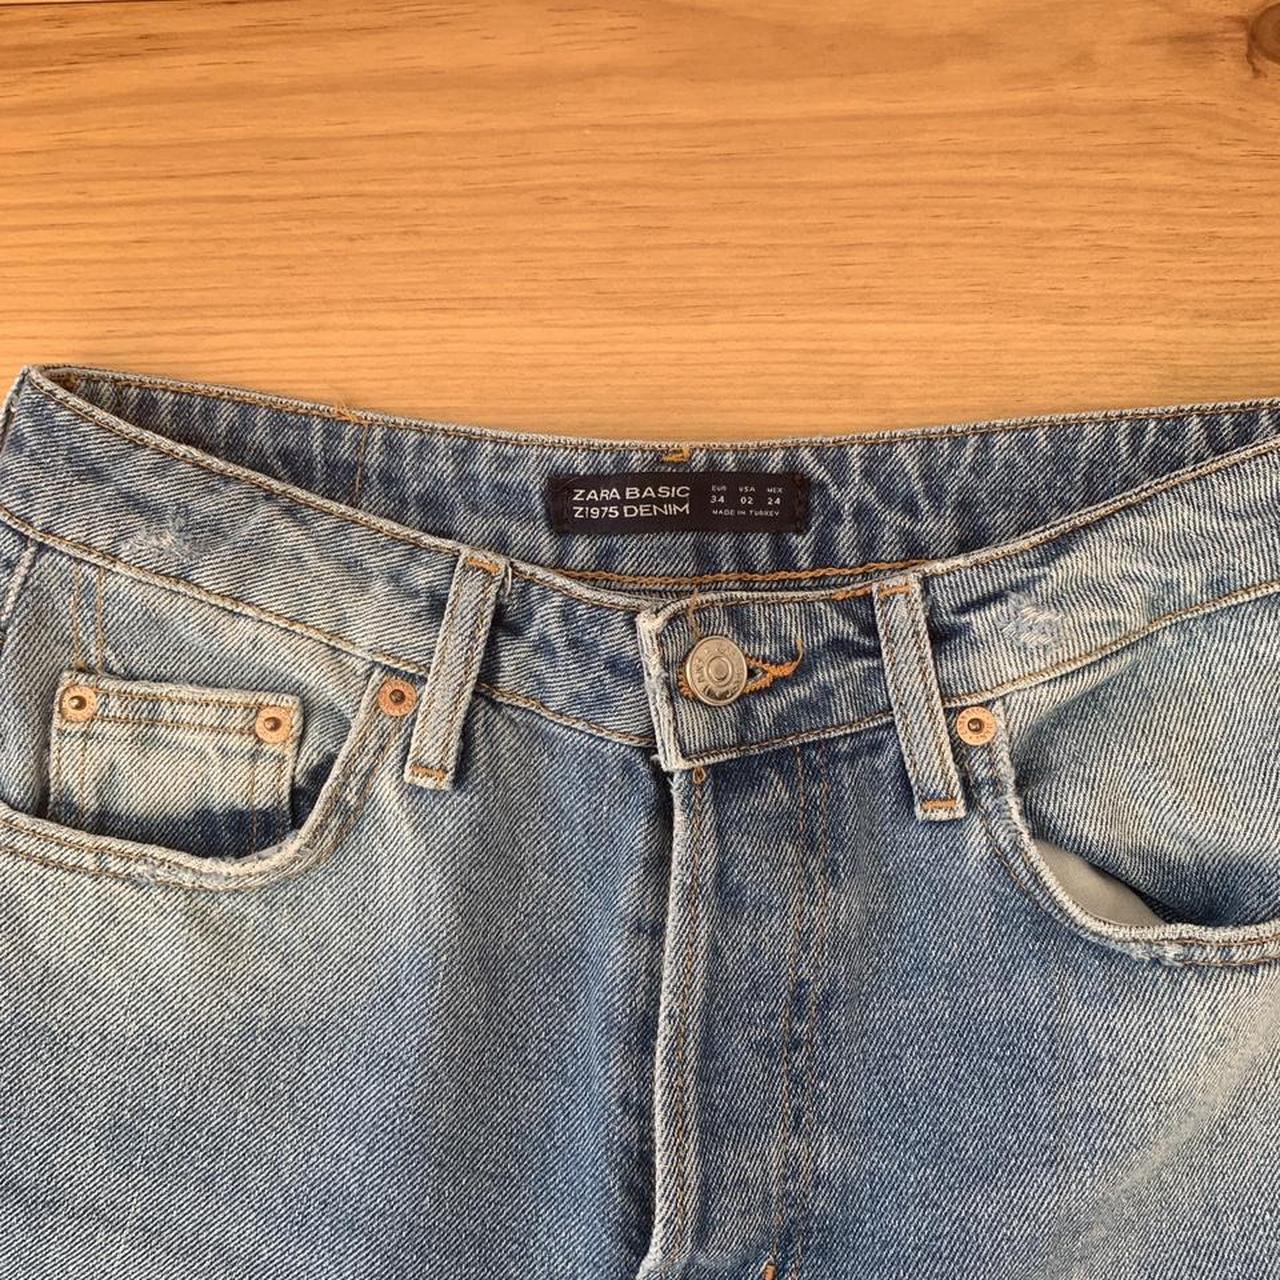 Zara Light/Mid Wash Denim Slim Mom Jeans in... - Depop